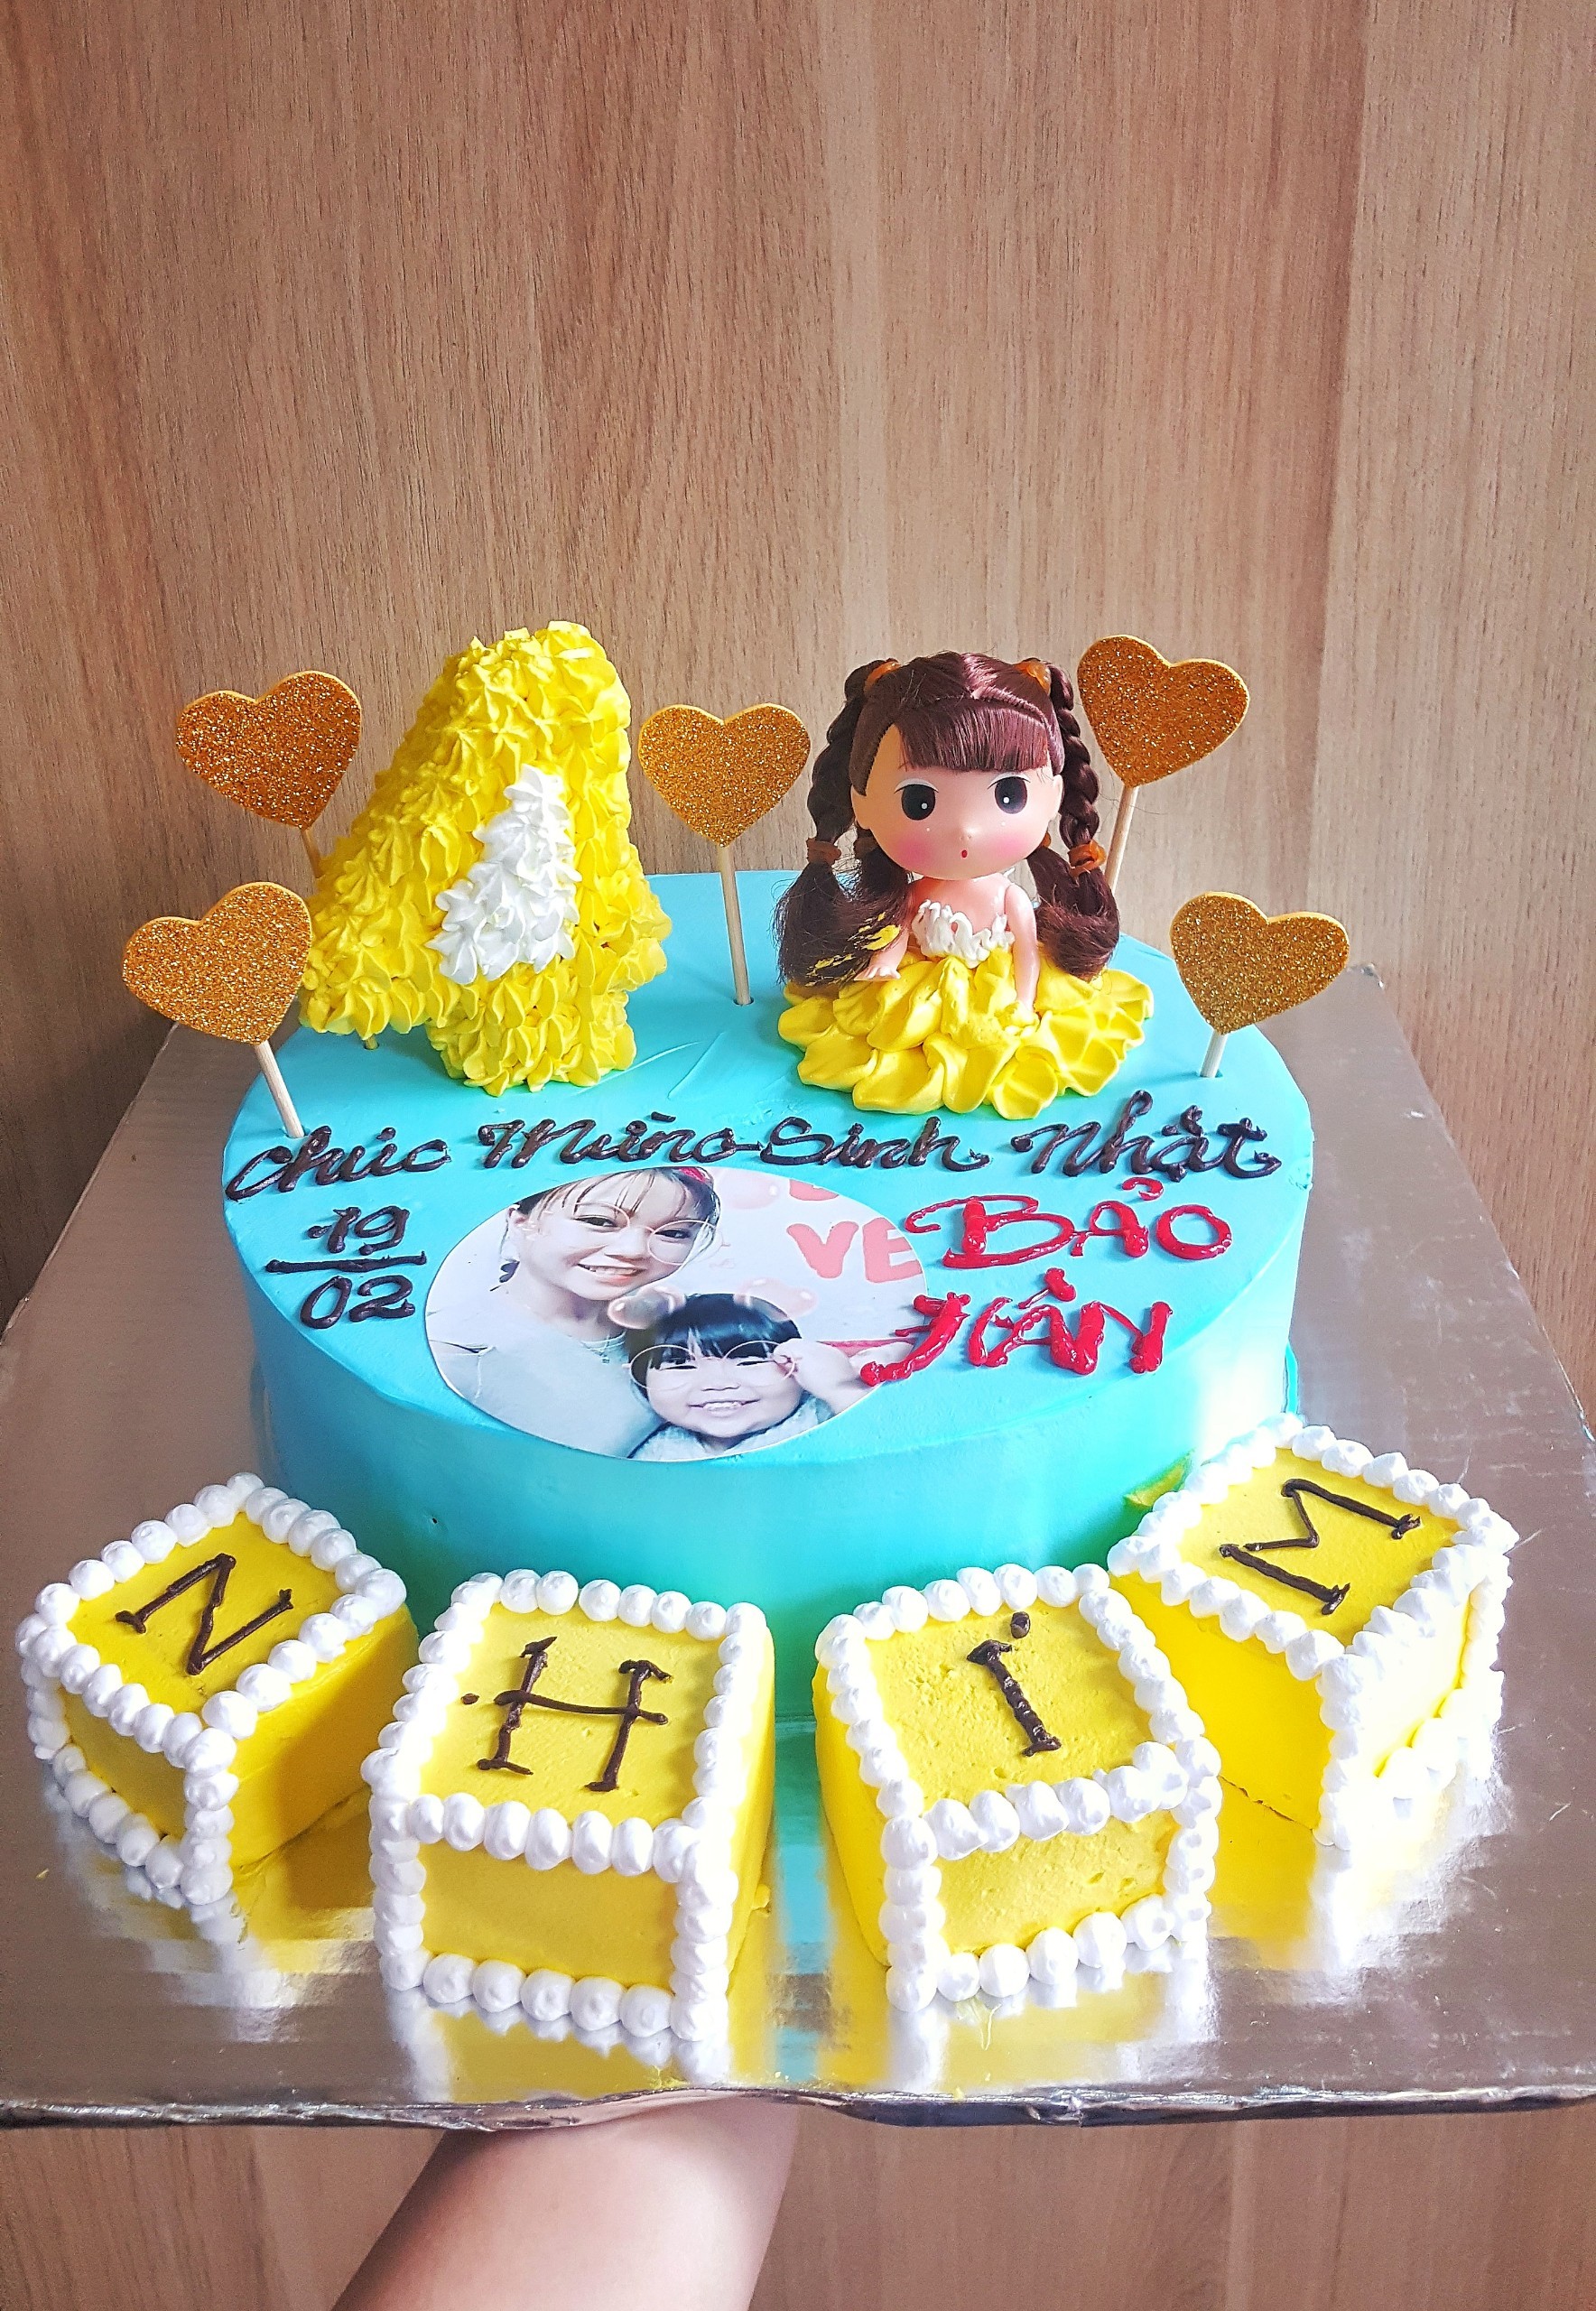 Bánh kem sữa sinh nhật 2 tầng chủ đề búp bê công chúa hoạt hình cho bé   Tiny Pretty Cake